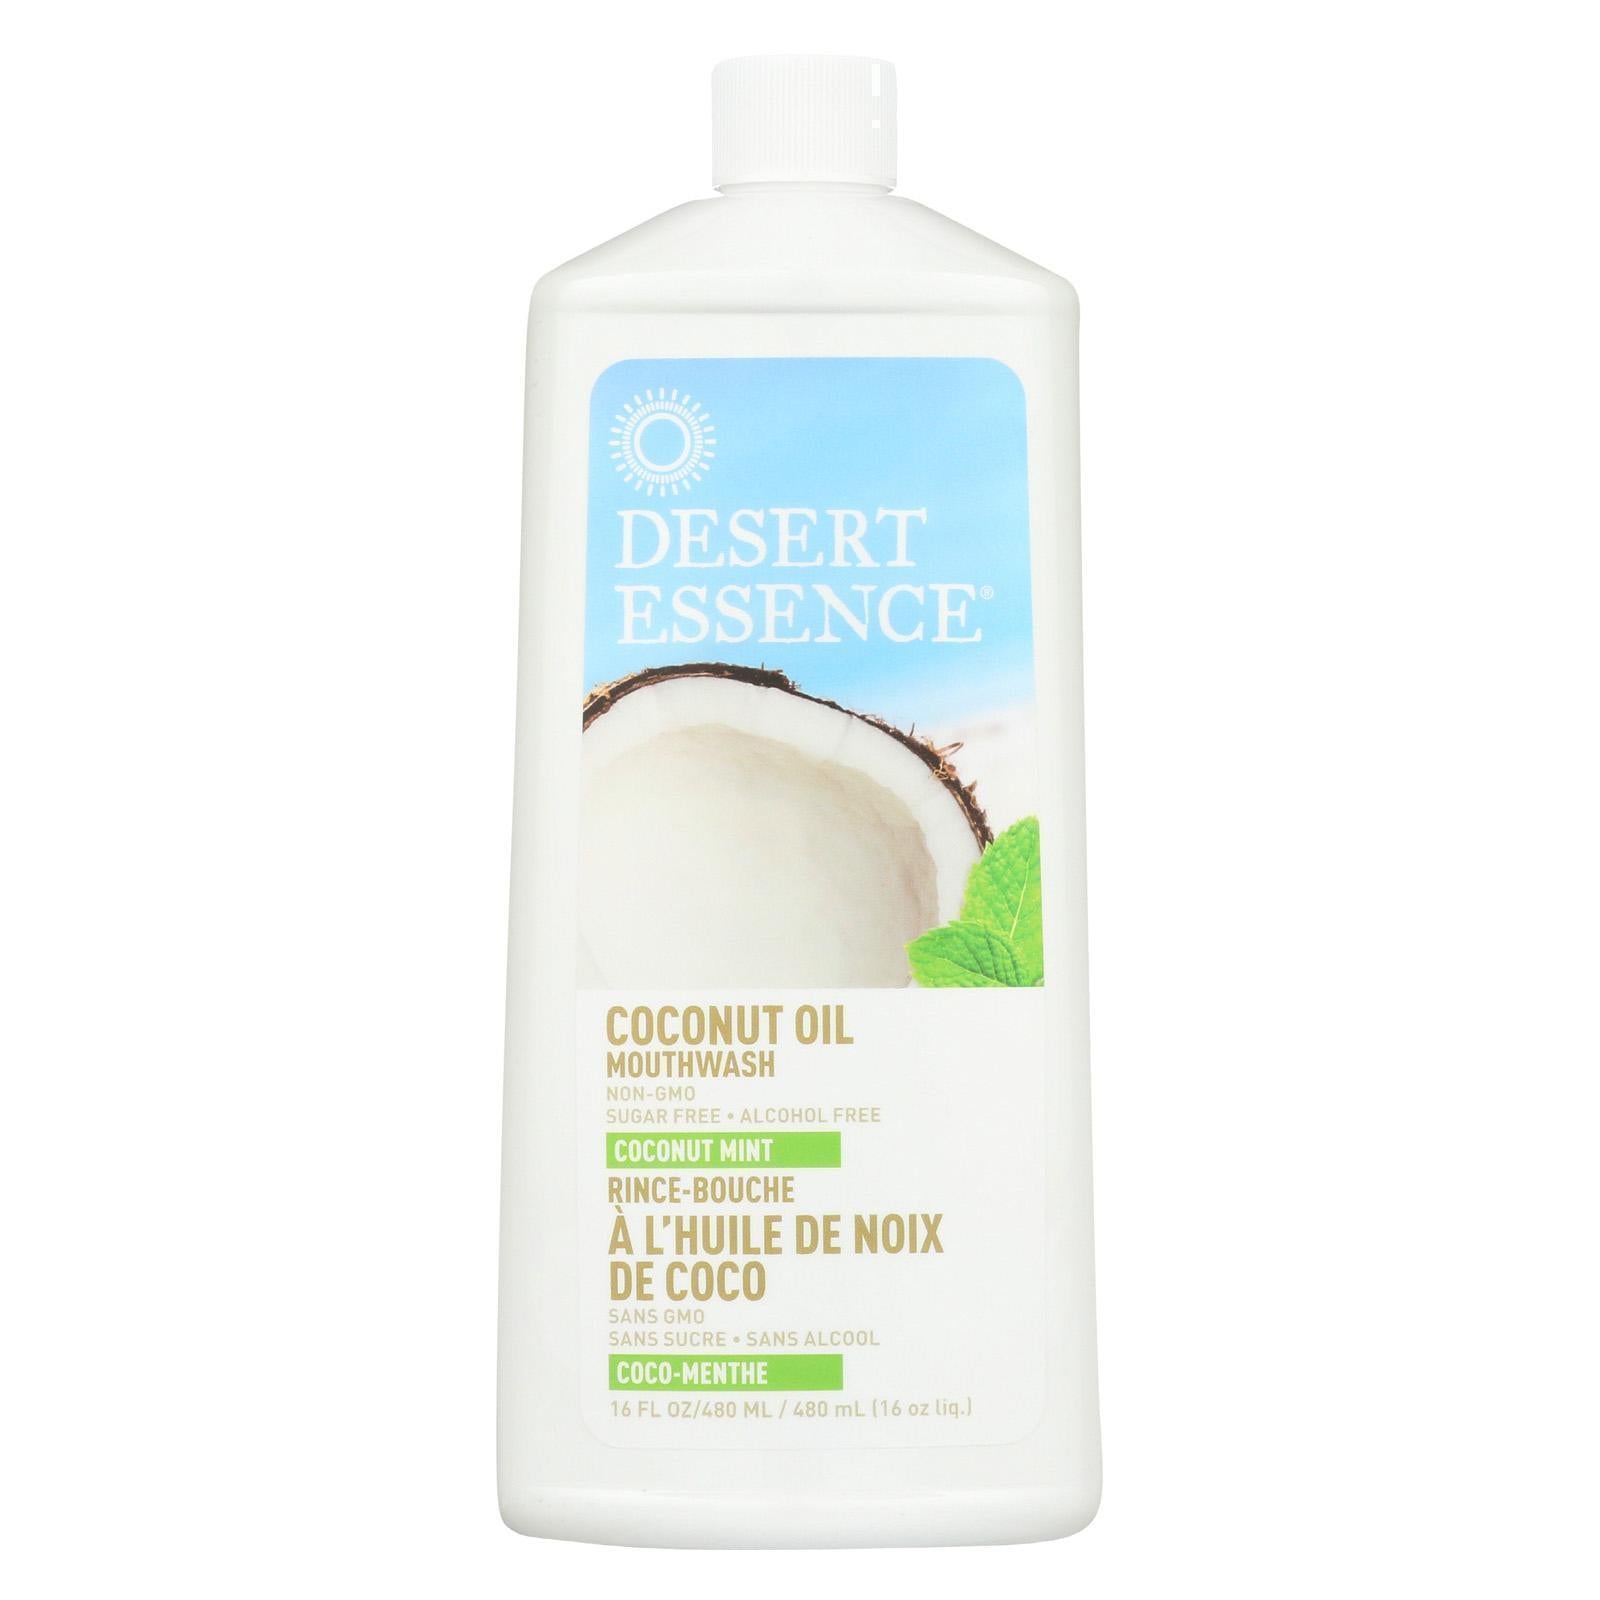 Desert Essence Coconut Oil Mouthwash - Coconut Mint - 16 Fl Oz